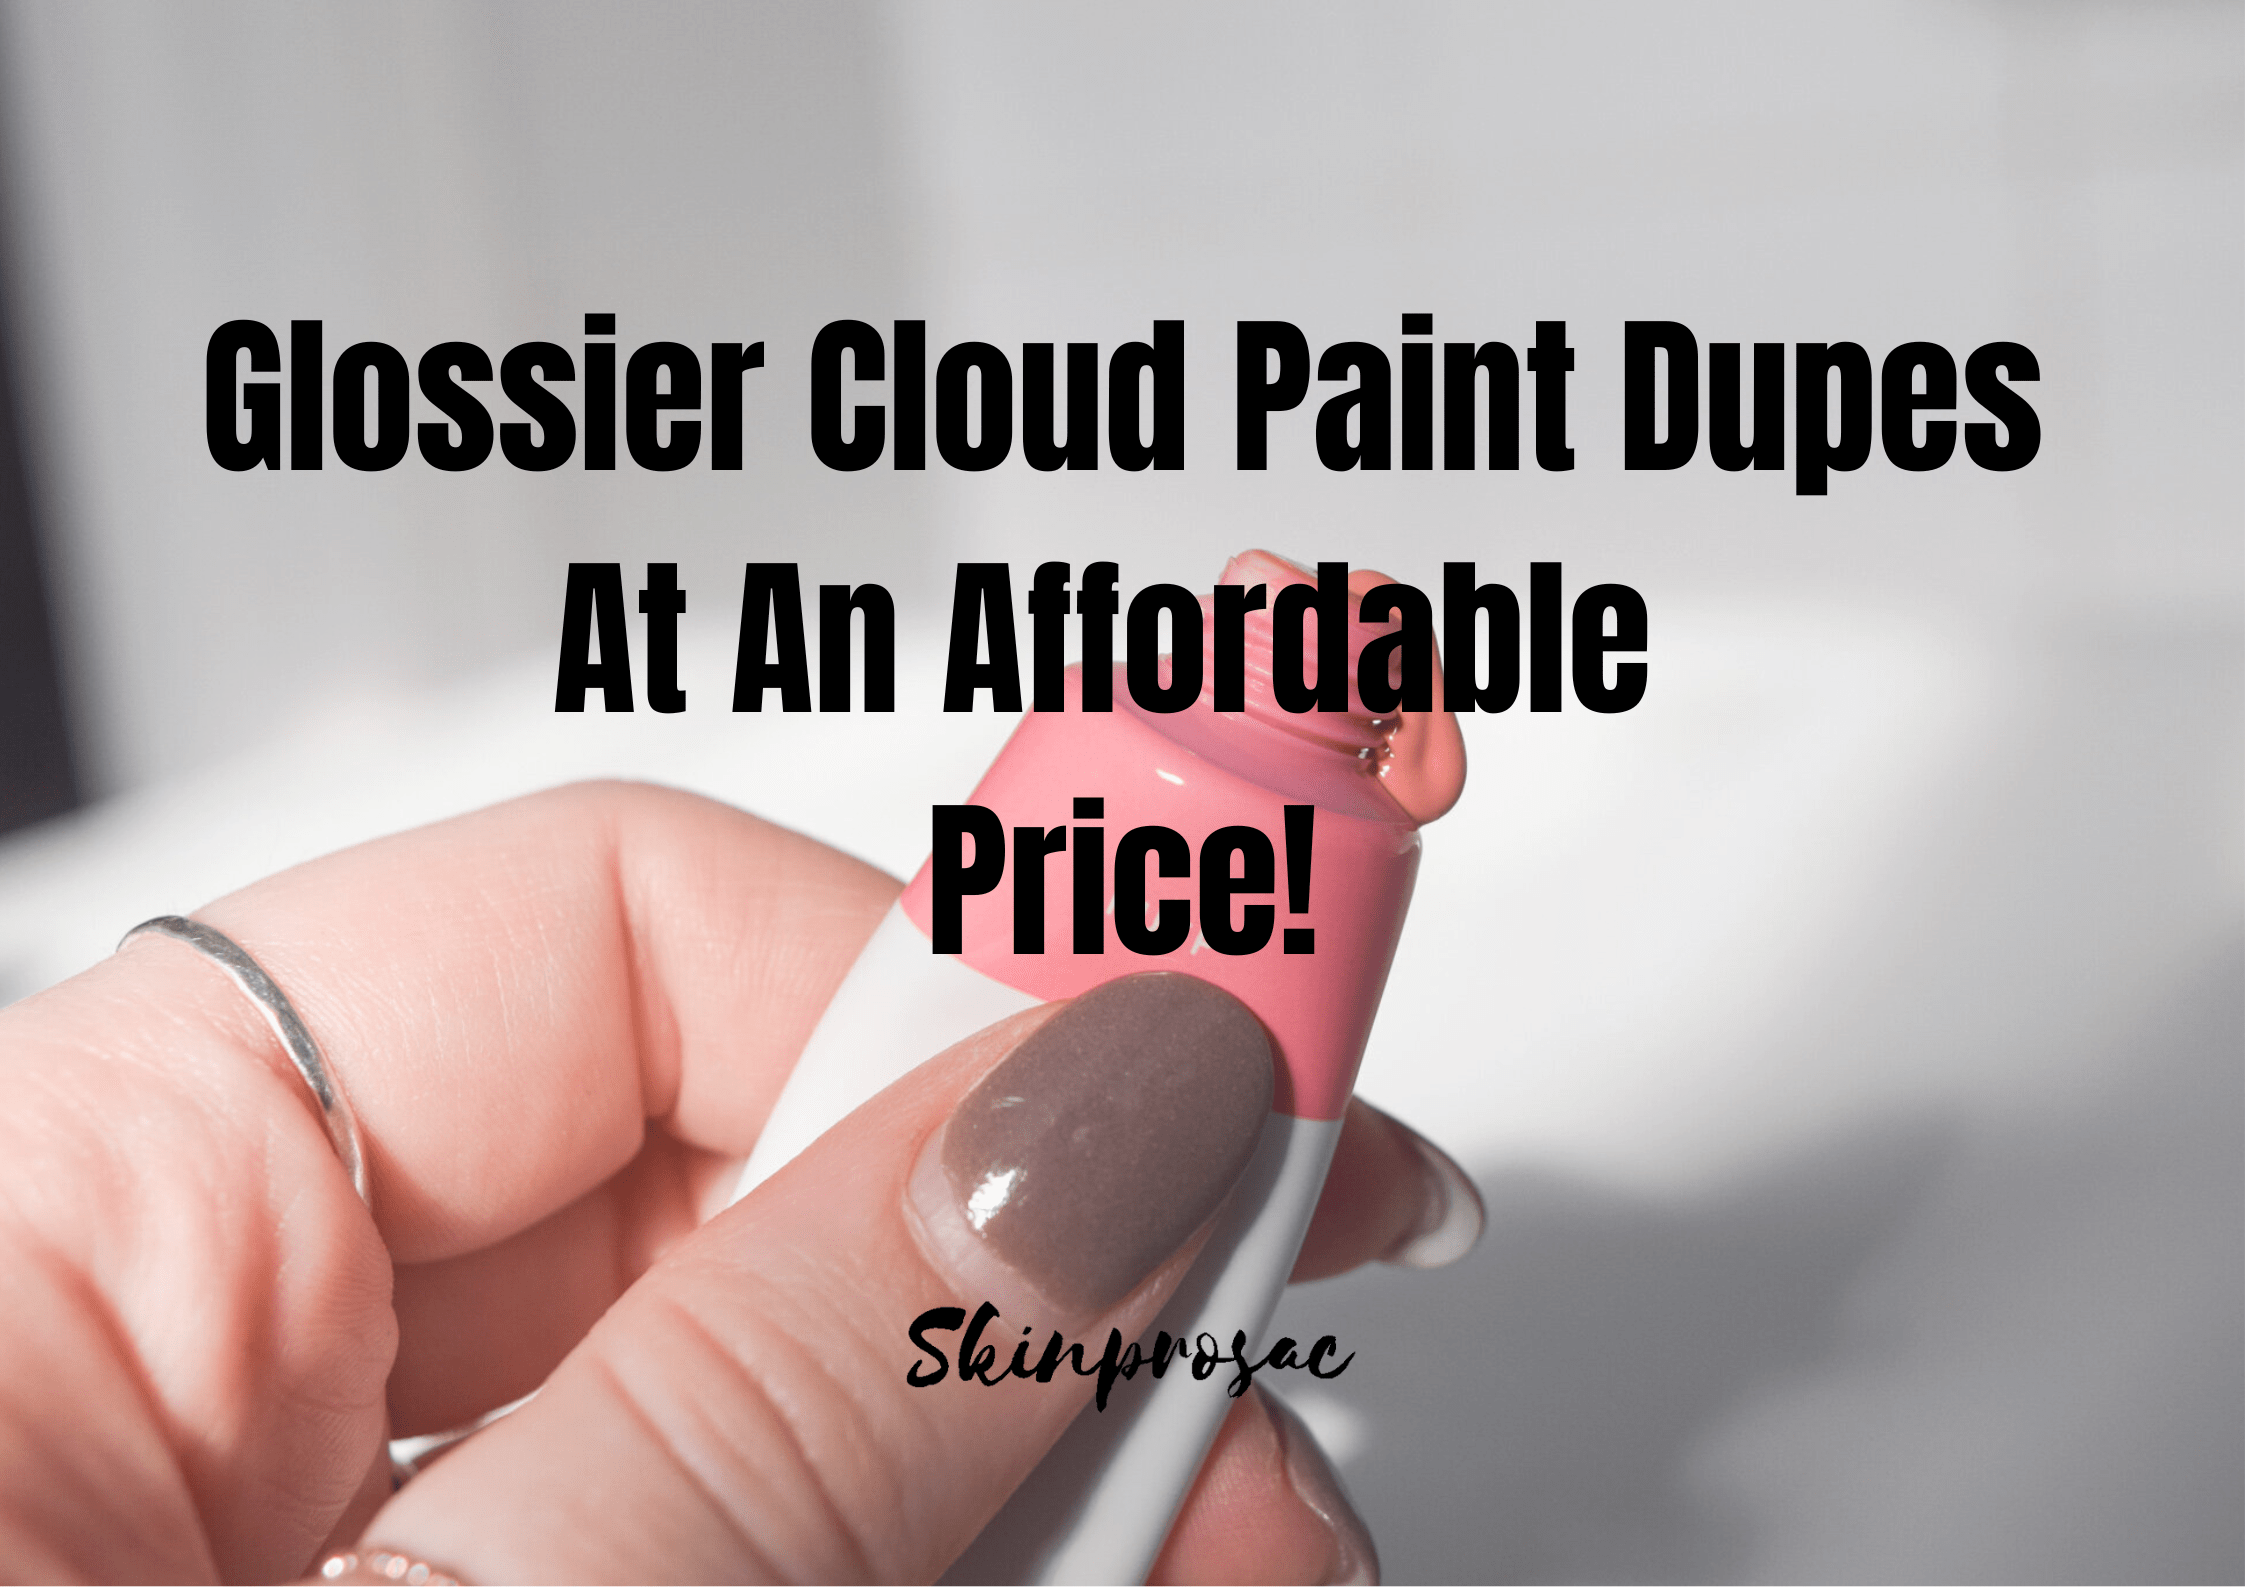 Glossier Cloud Paint Dupe